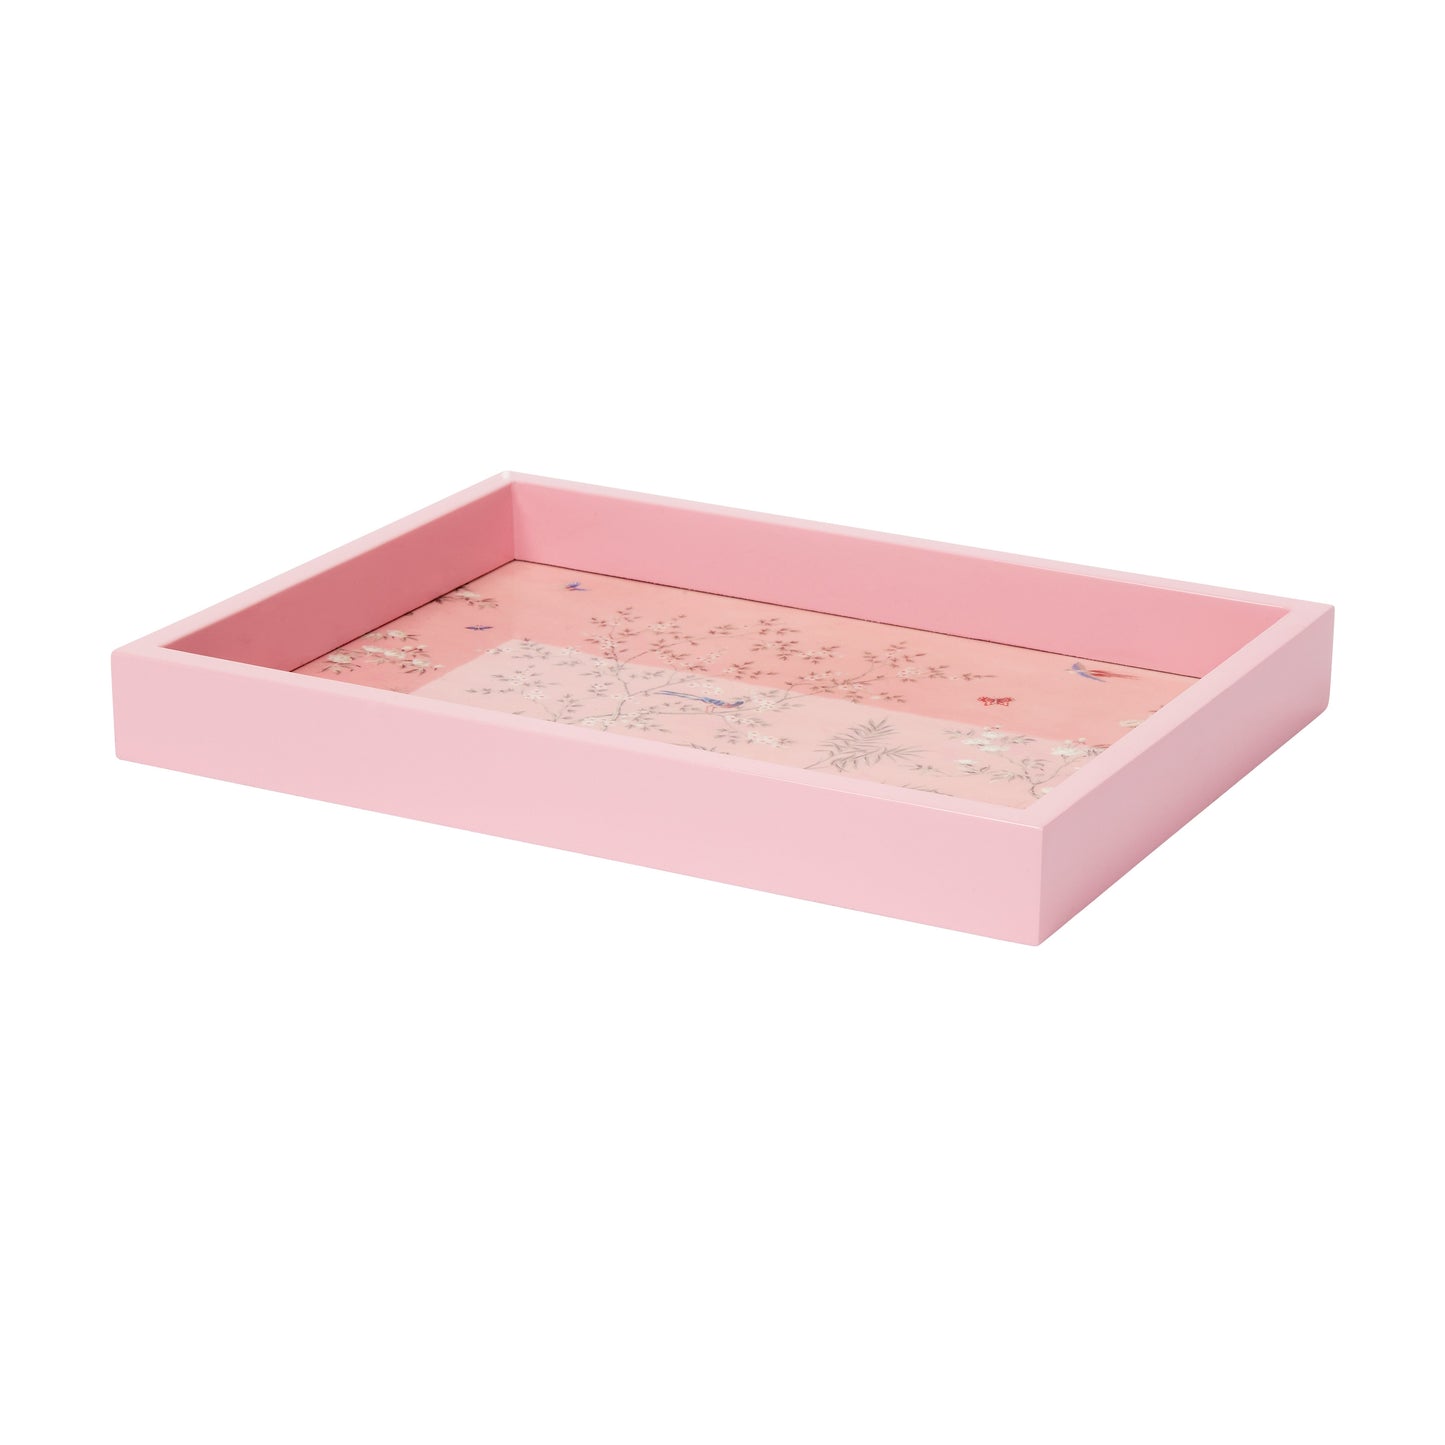 Pink Small Chinoiserie Tray - Addison Ross Ltd UK